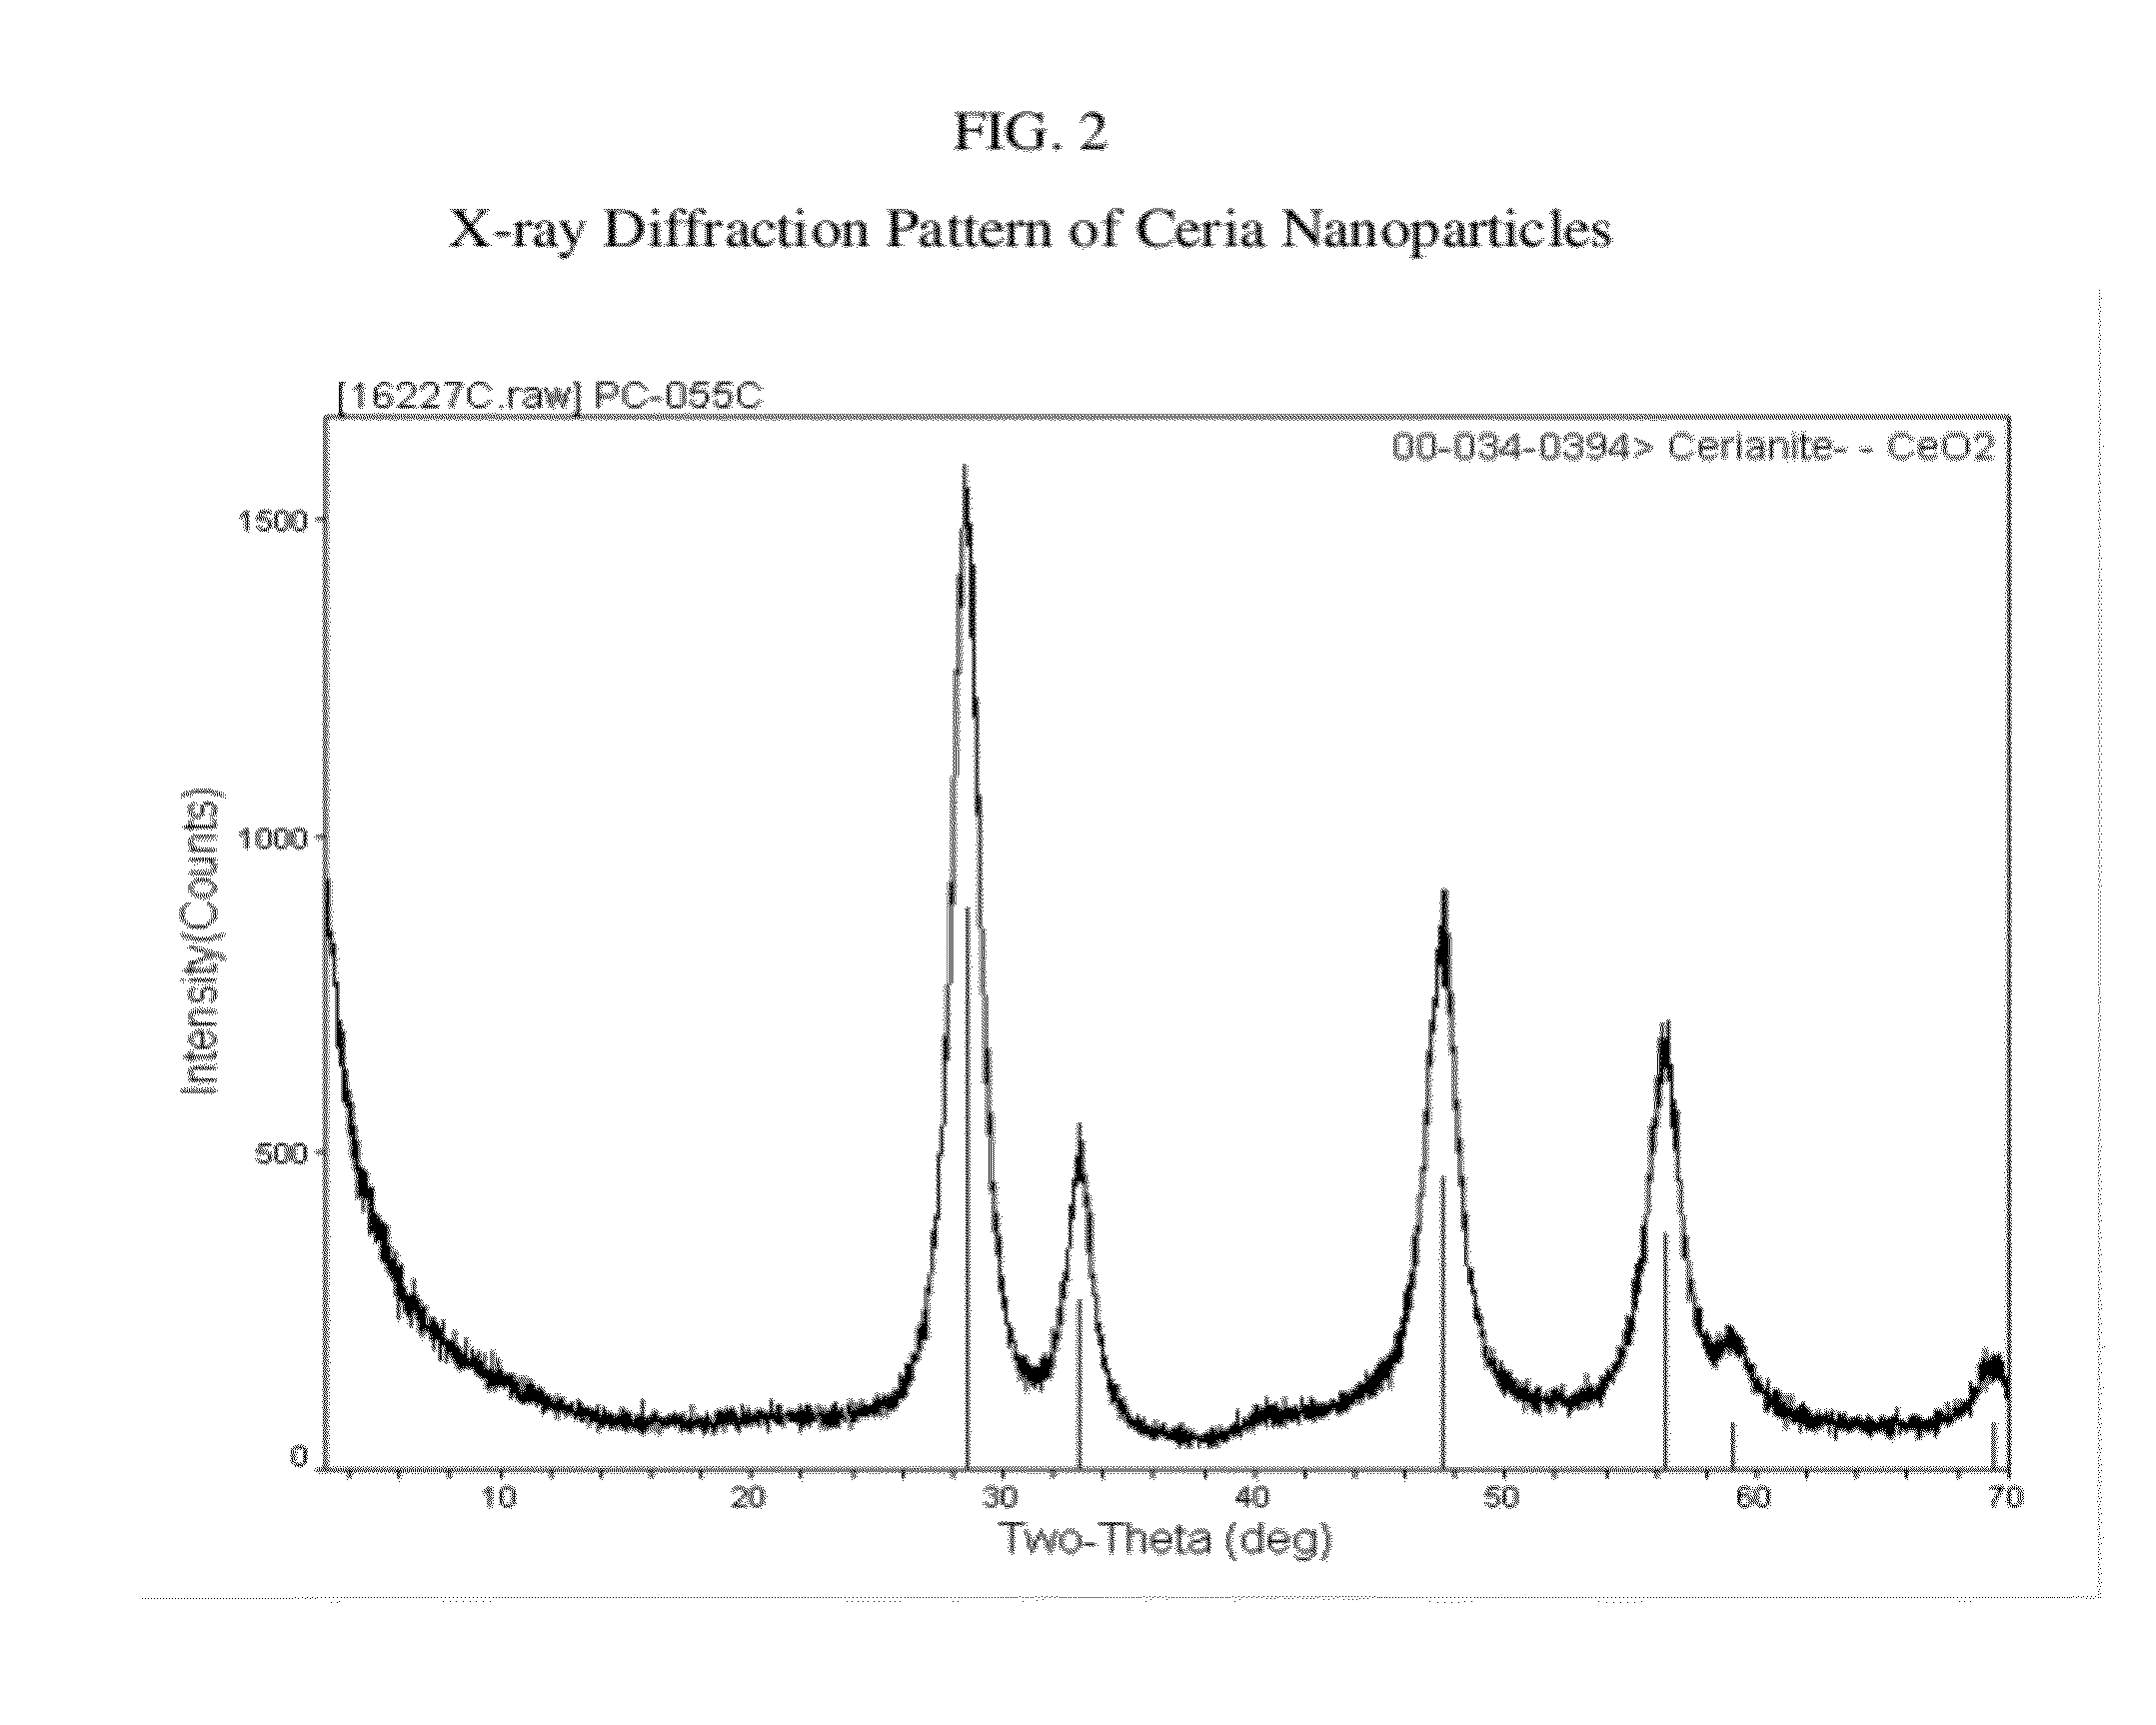 Cerium containing nanoparticles prepared in non-polar solvent